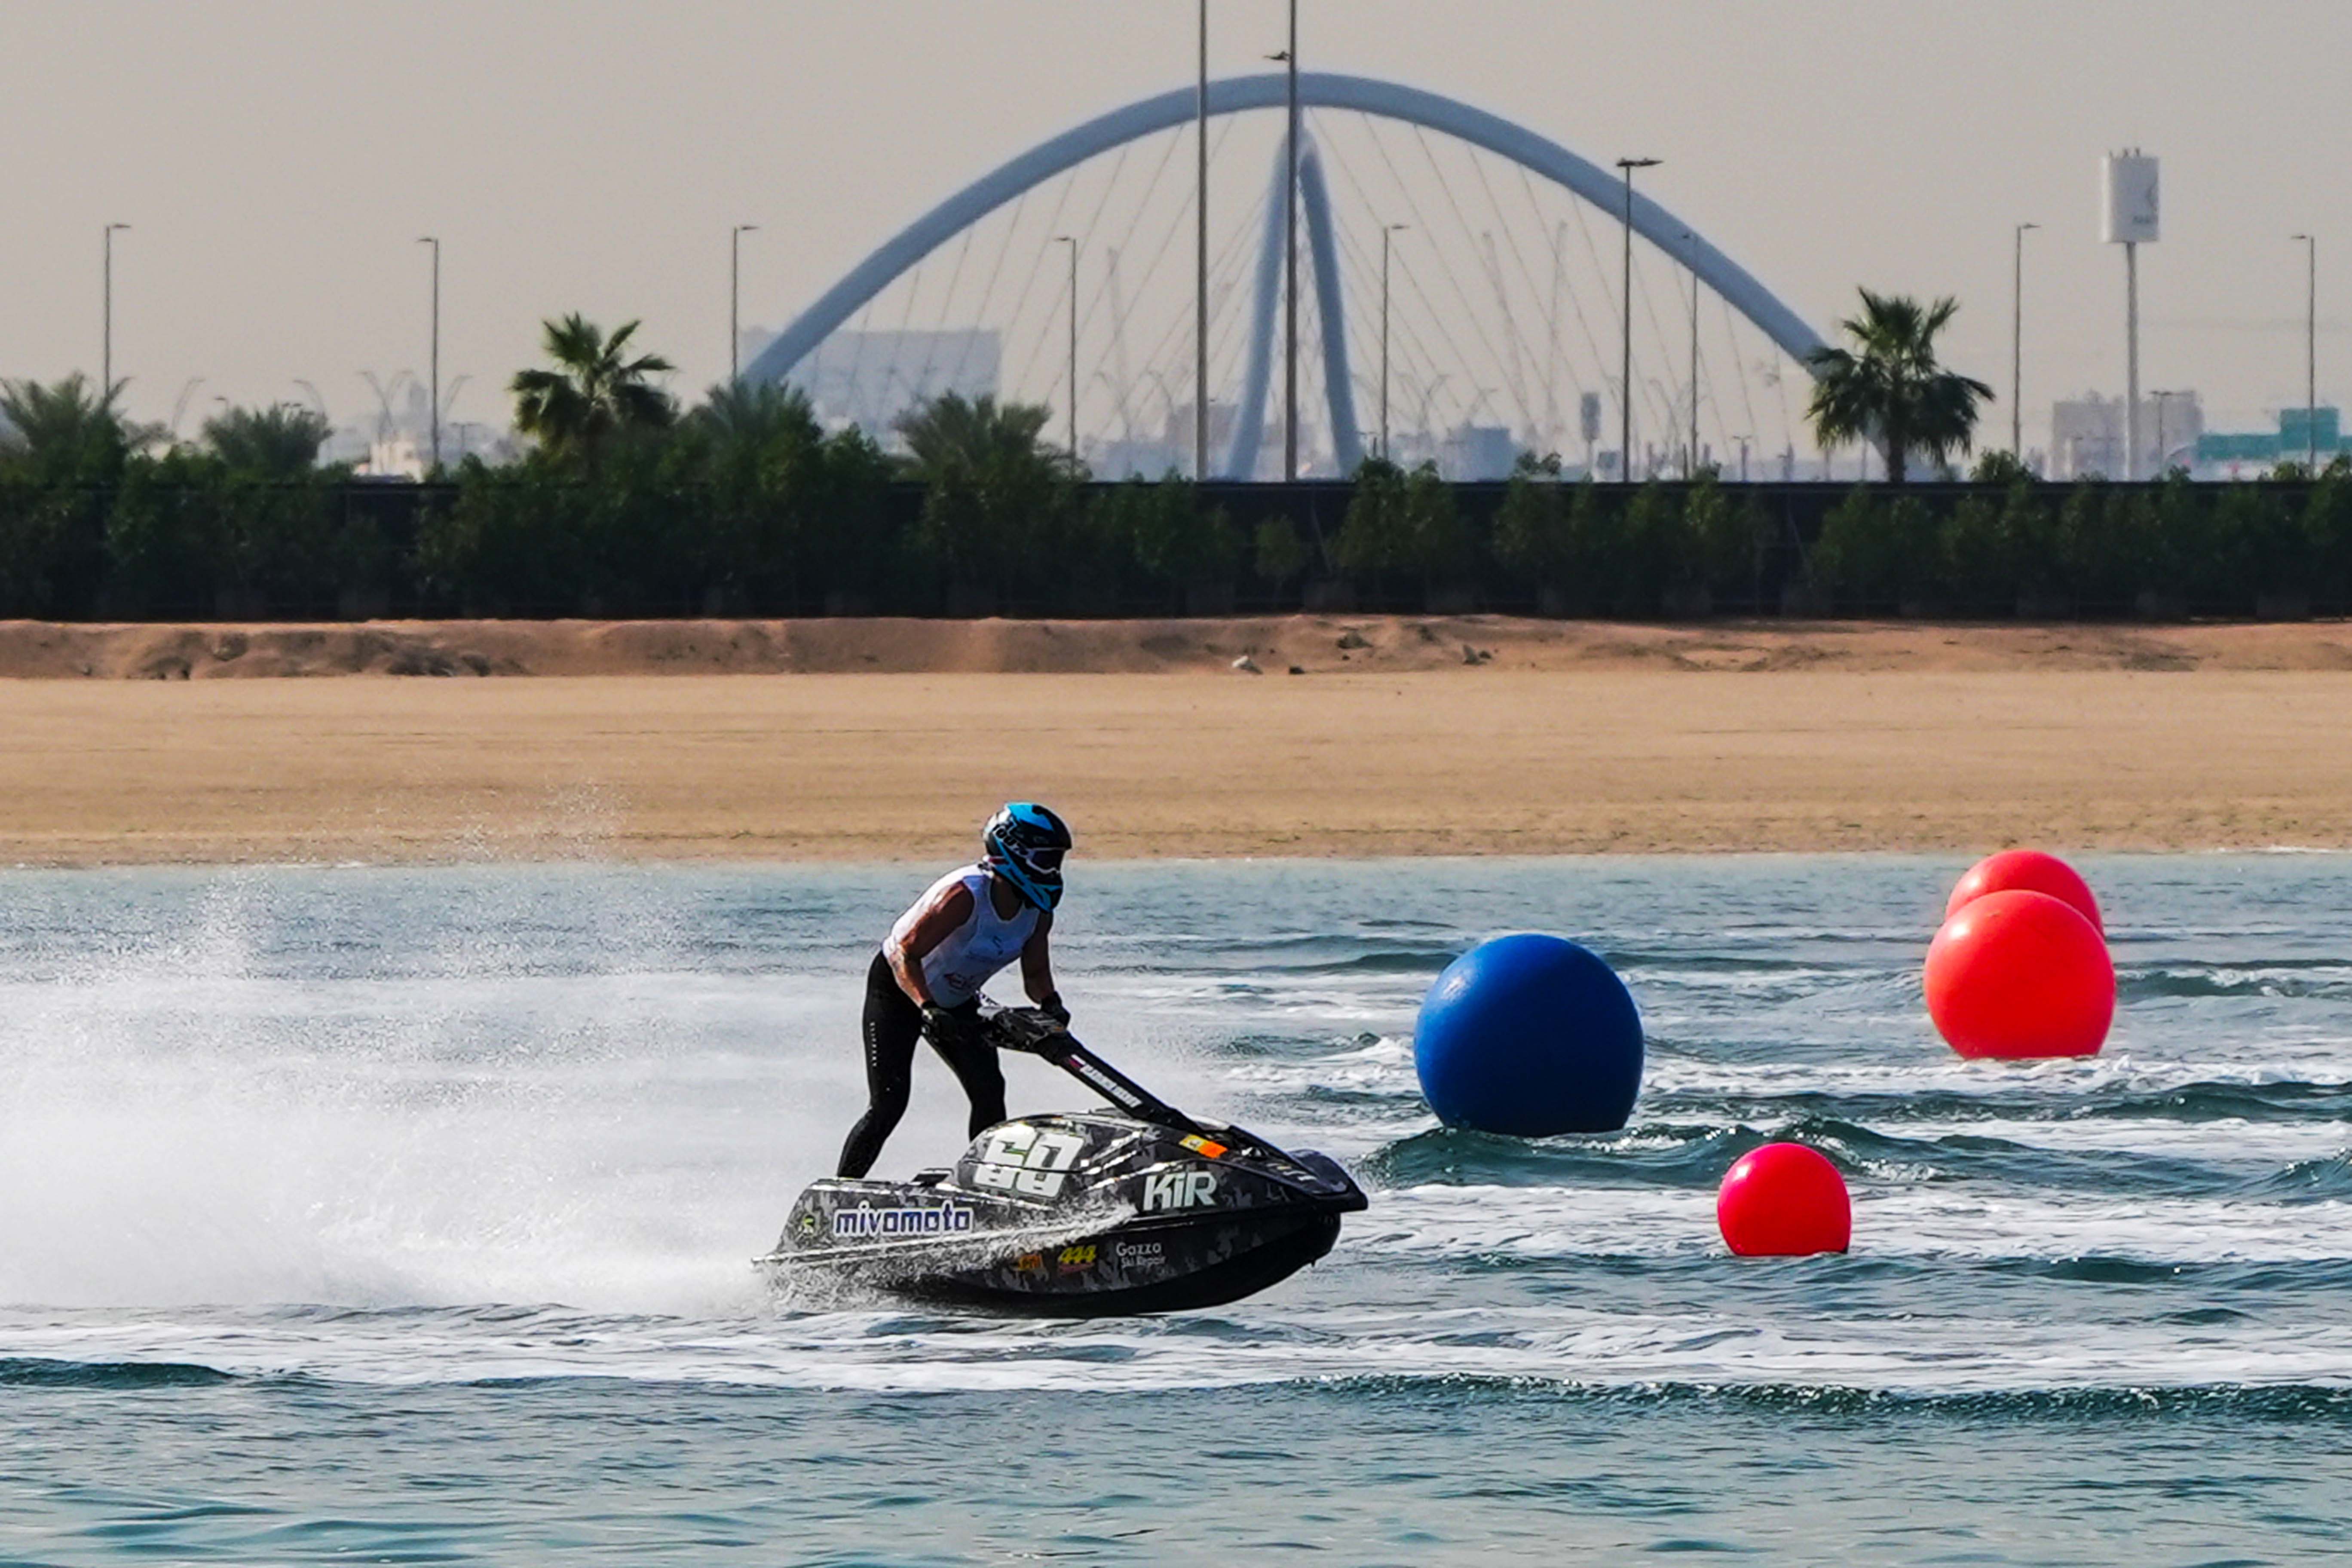 UAE Int'l Aquabike Championship is set to kick off this Saturday